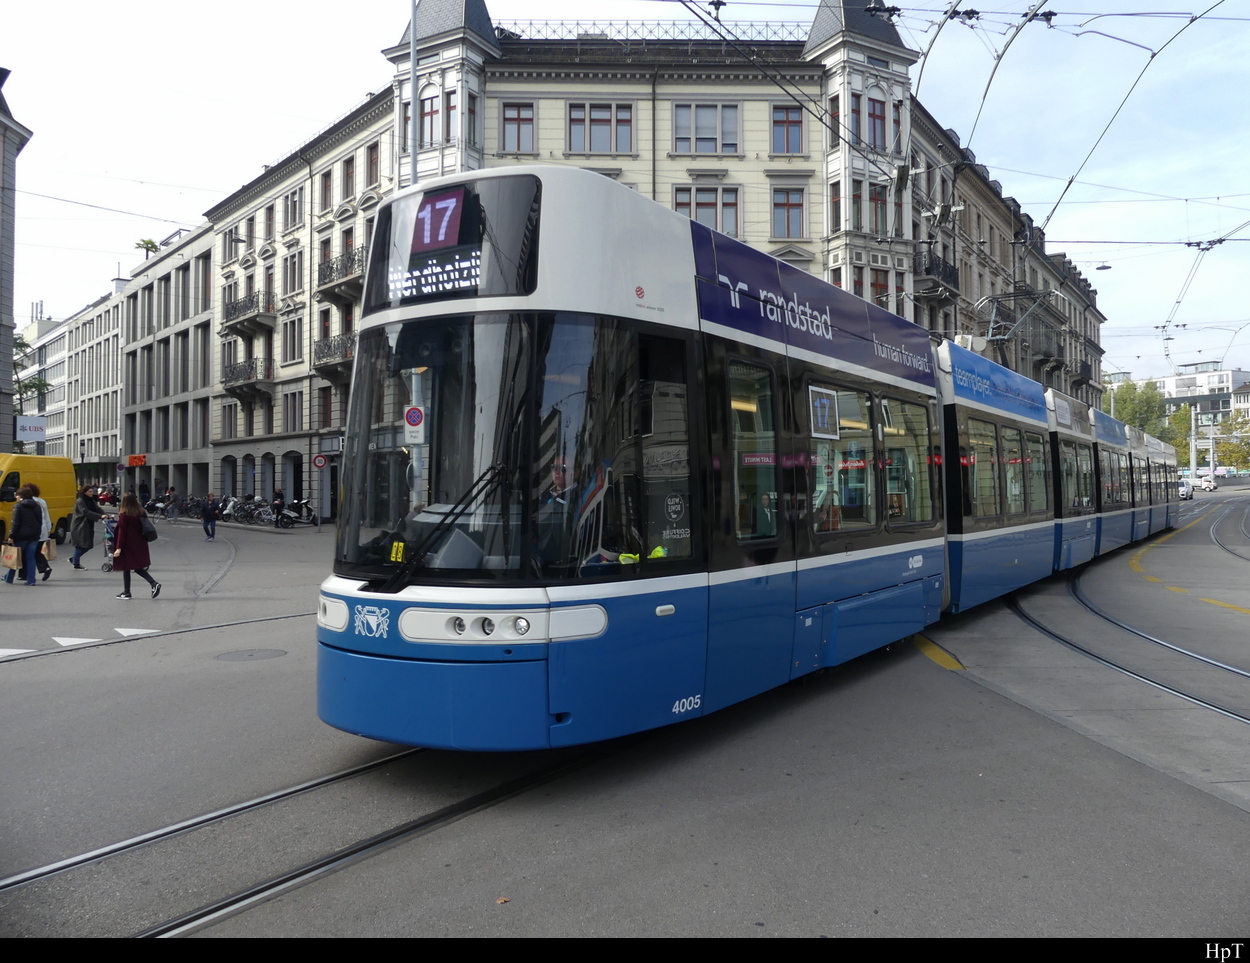 VBZ - Tram Be 6/8 4005 unterwegs auf der Linie 17 in der Stadt Zürich am 04.10.2022